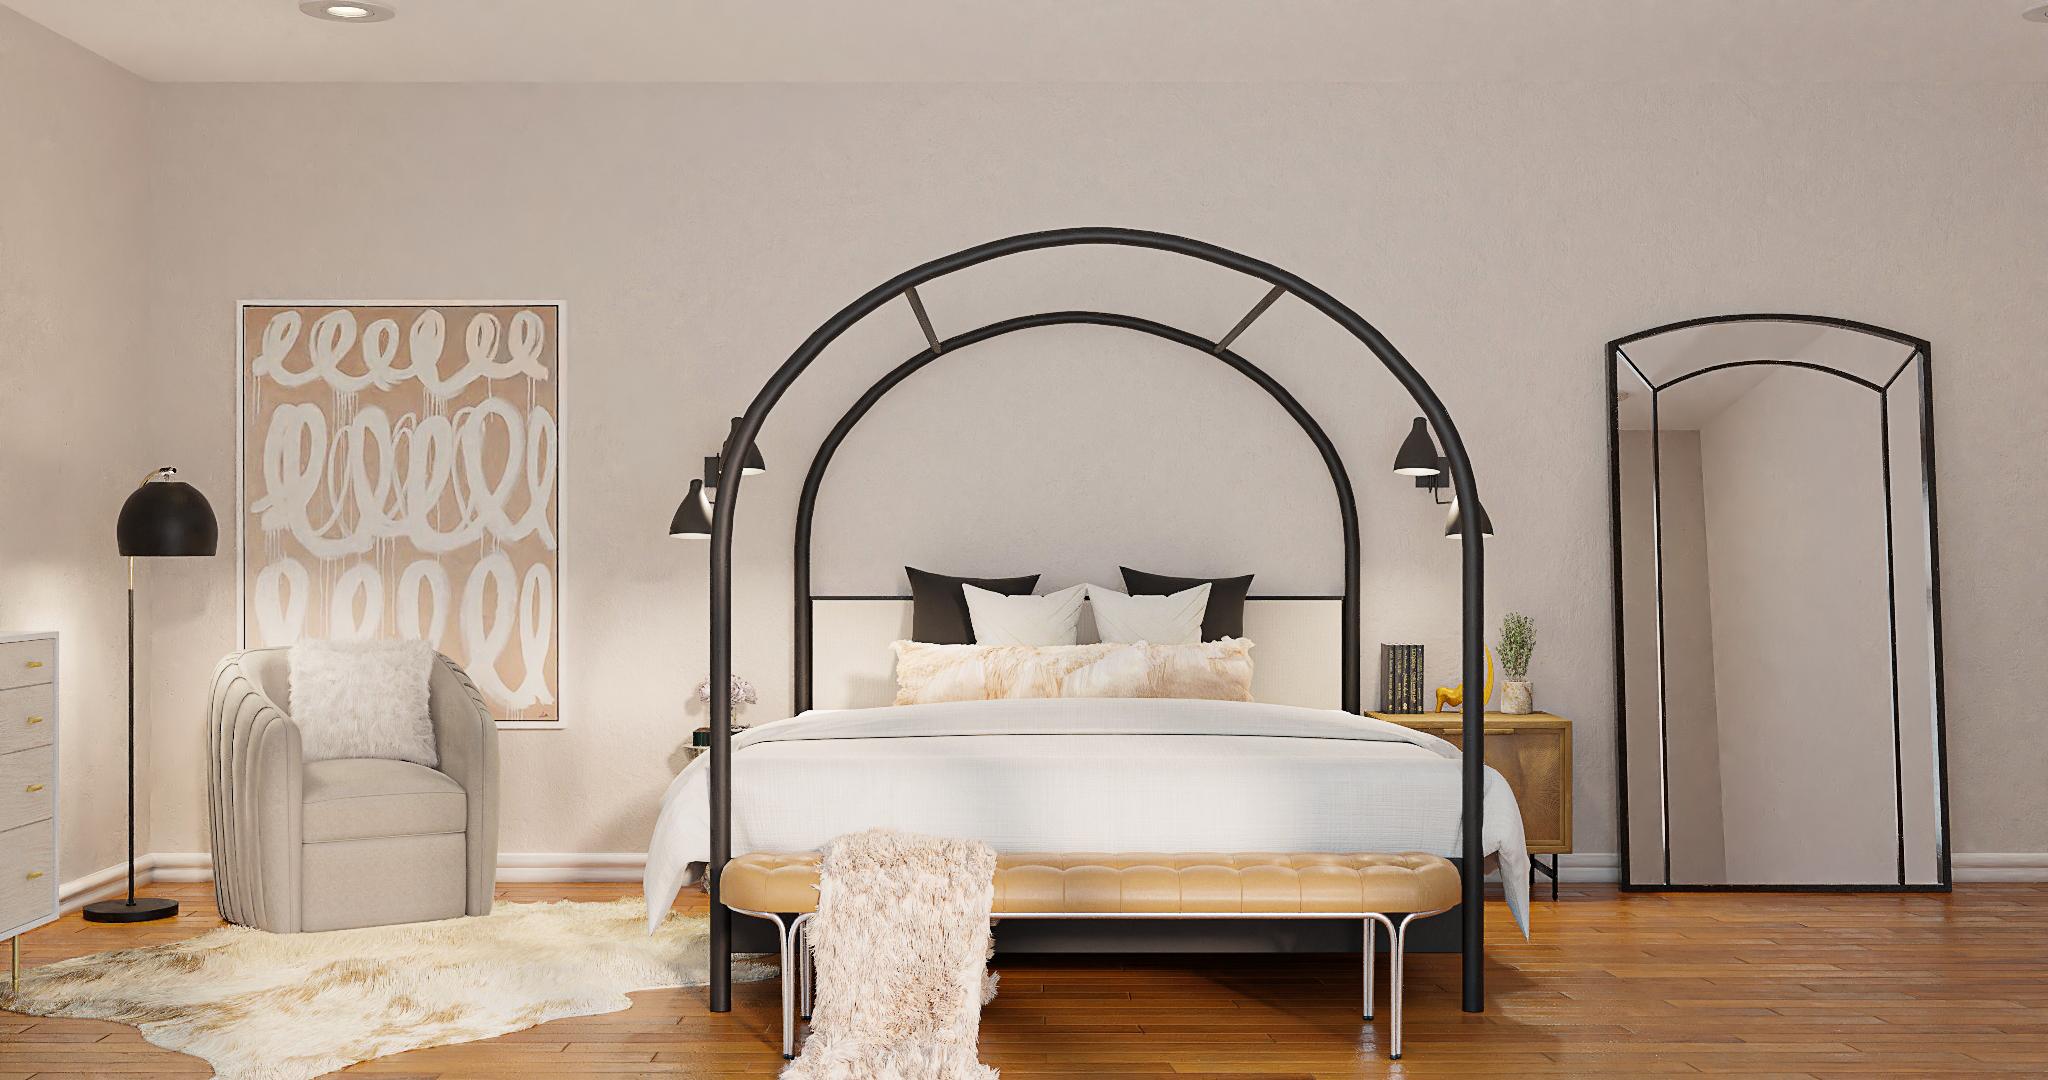 An Urban Bedroom That Speaks Industrial & Glam